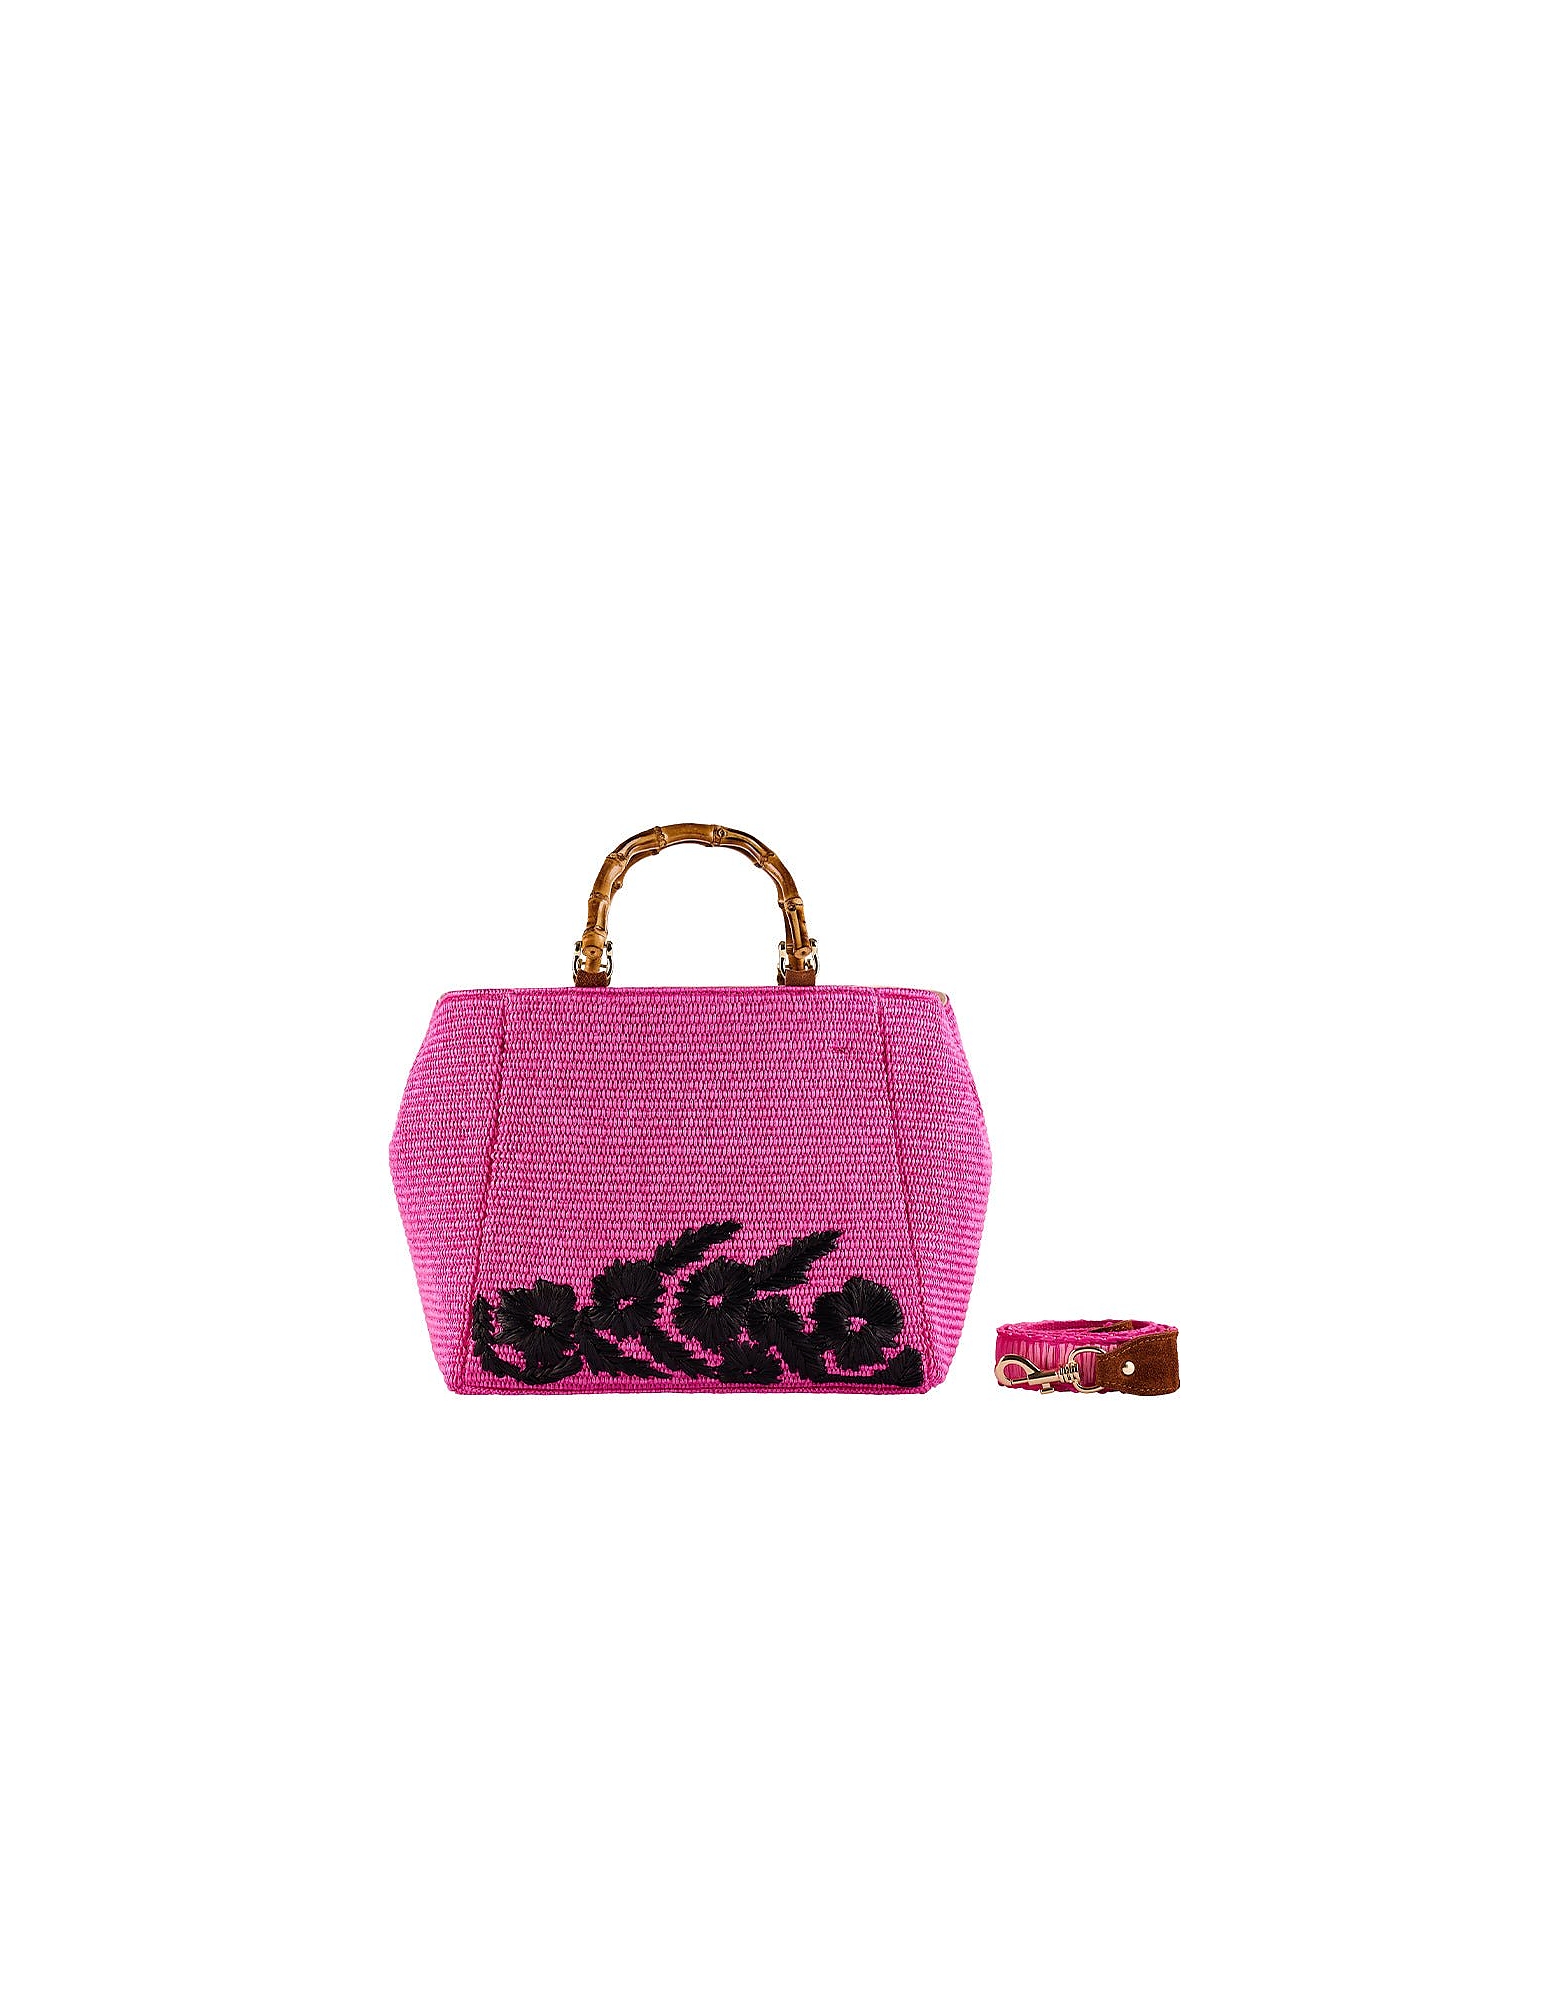 Viamailbag Designer Handbags Giava Trim - Top Handle Bag In Rose